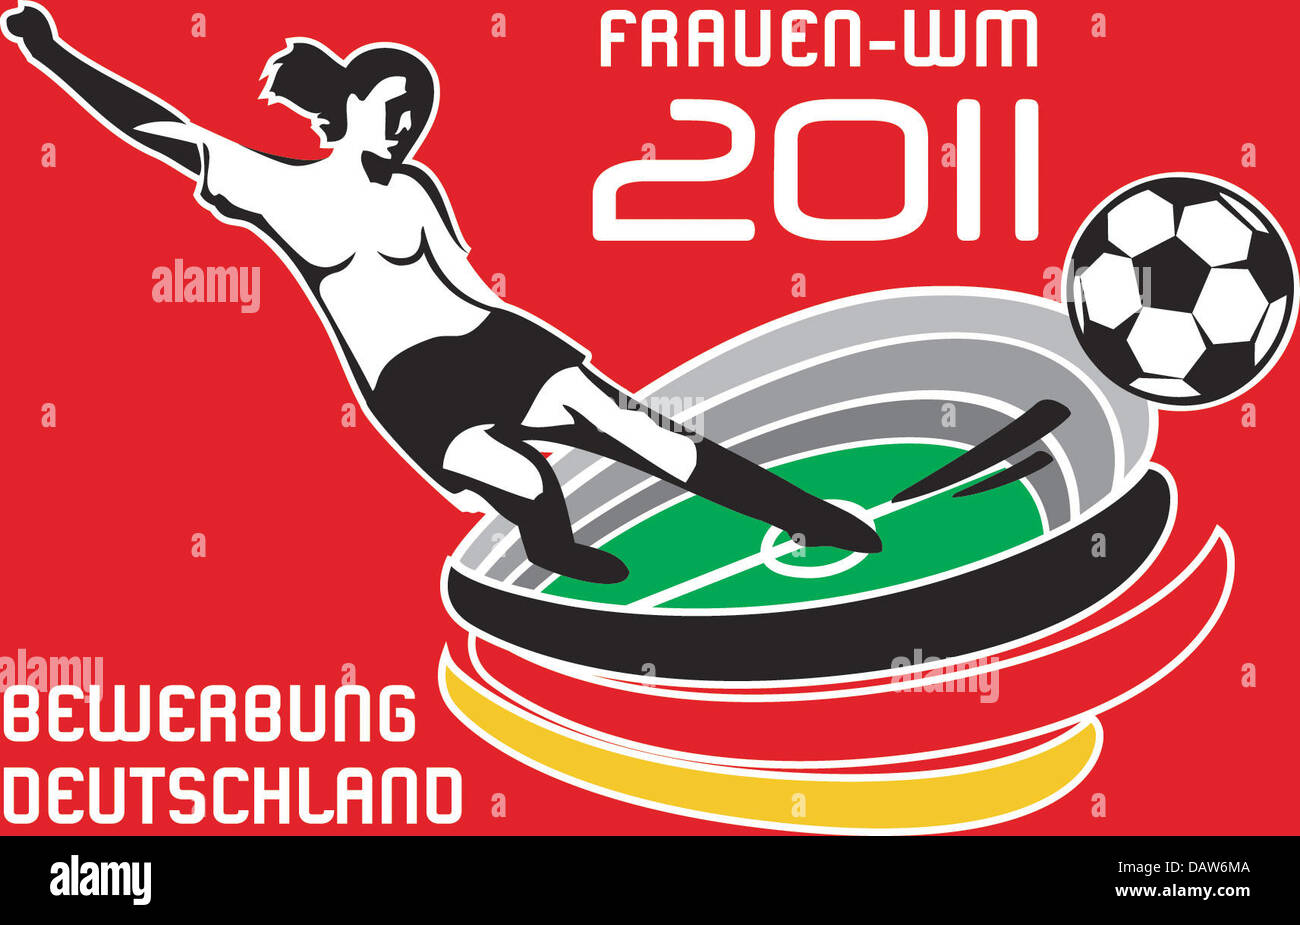 Das Bild zeigt das Logo der deutschen Werbekampagne für die Frauen-Fußball- WM 2011. Das Motto "auf Wiedersehen" folgt dem verwendet, bei der Männer WM  2006 "Zeit zu Gast bei Freunden". Deutschlands Anwendung Campagne